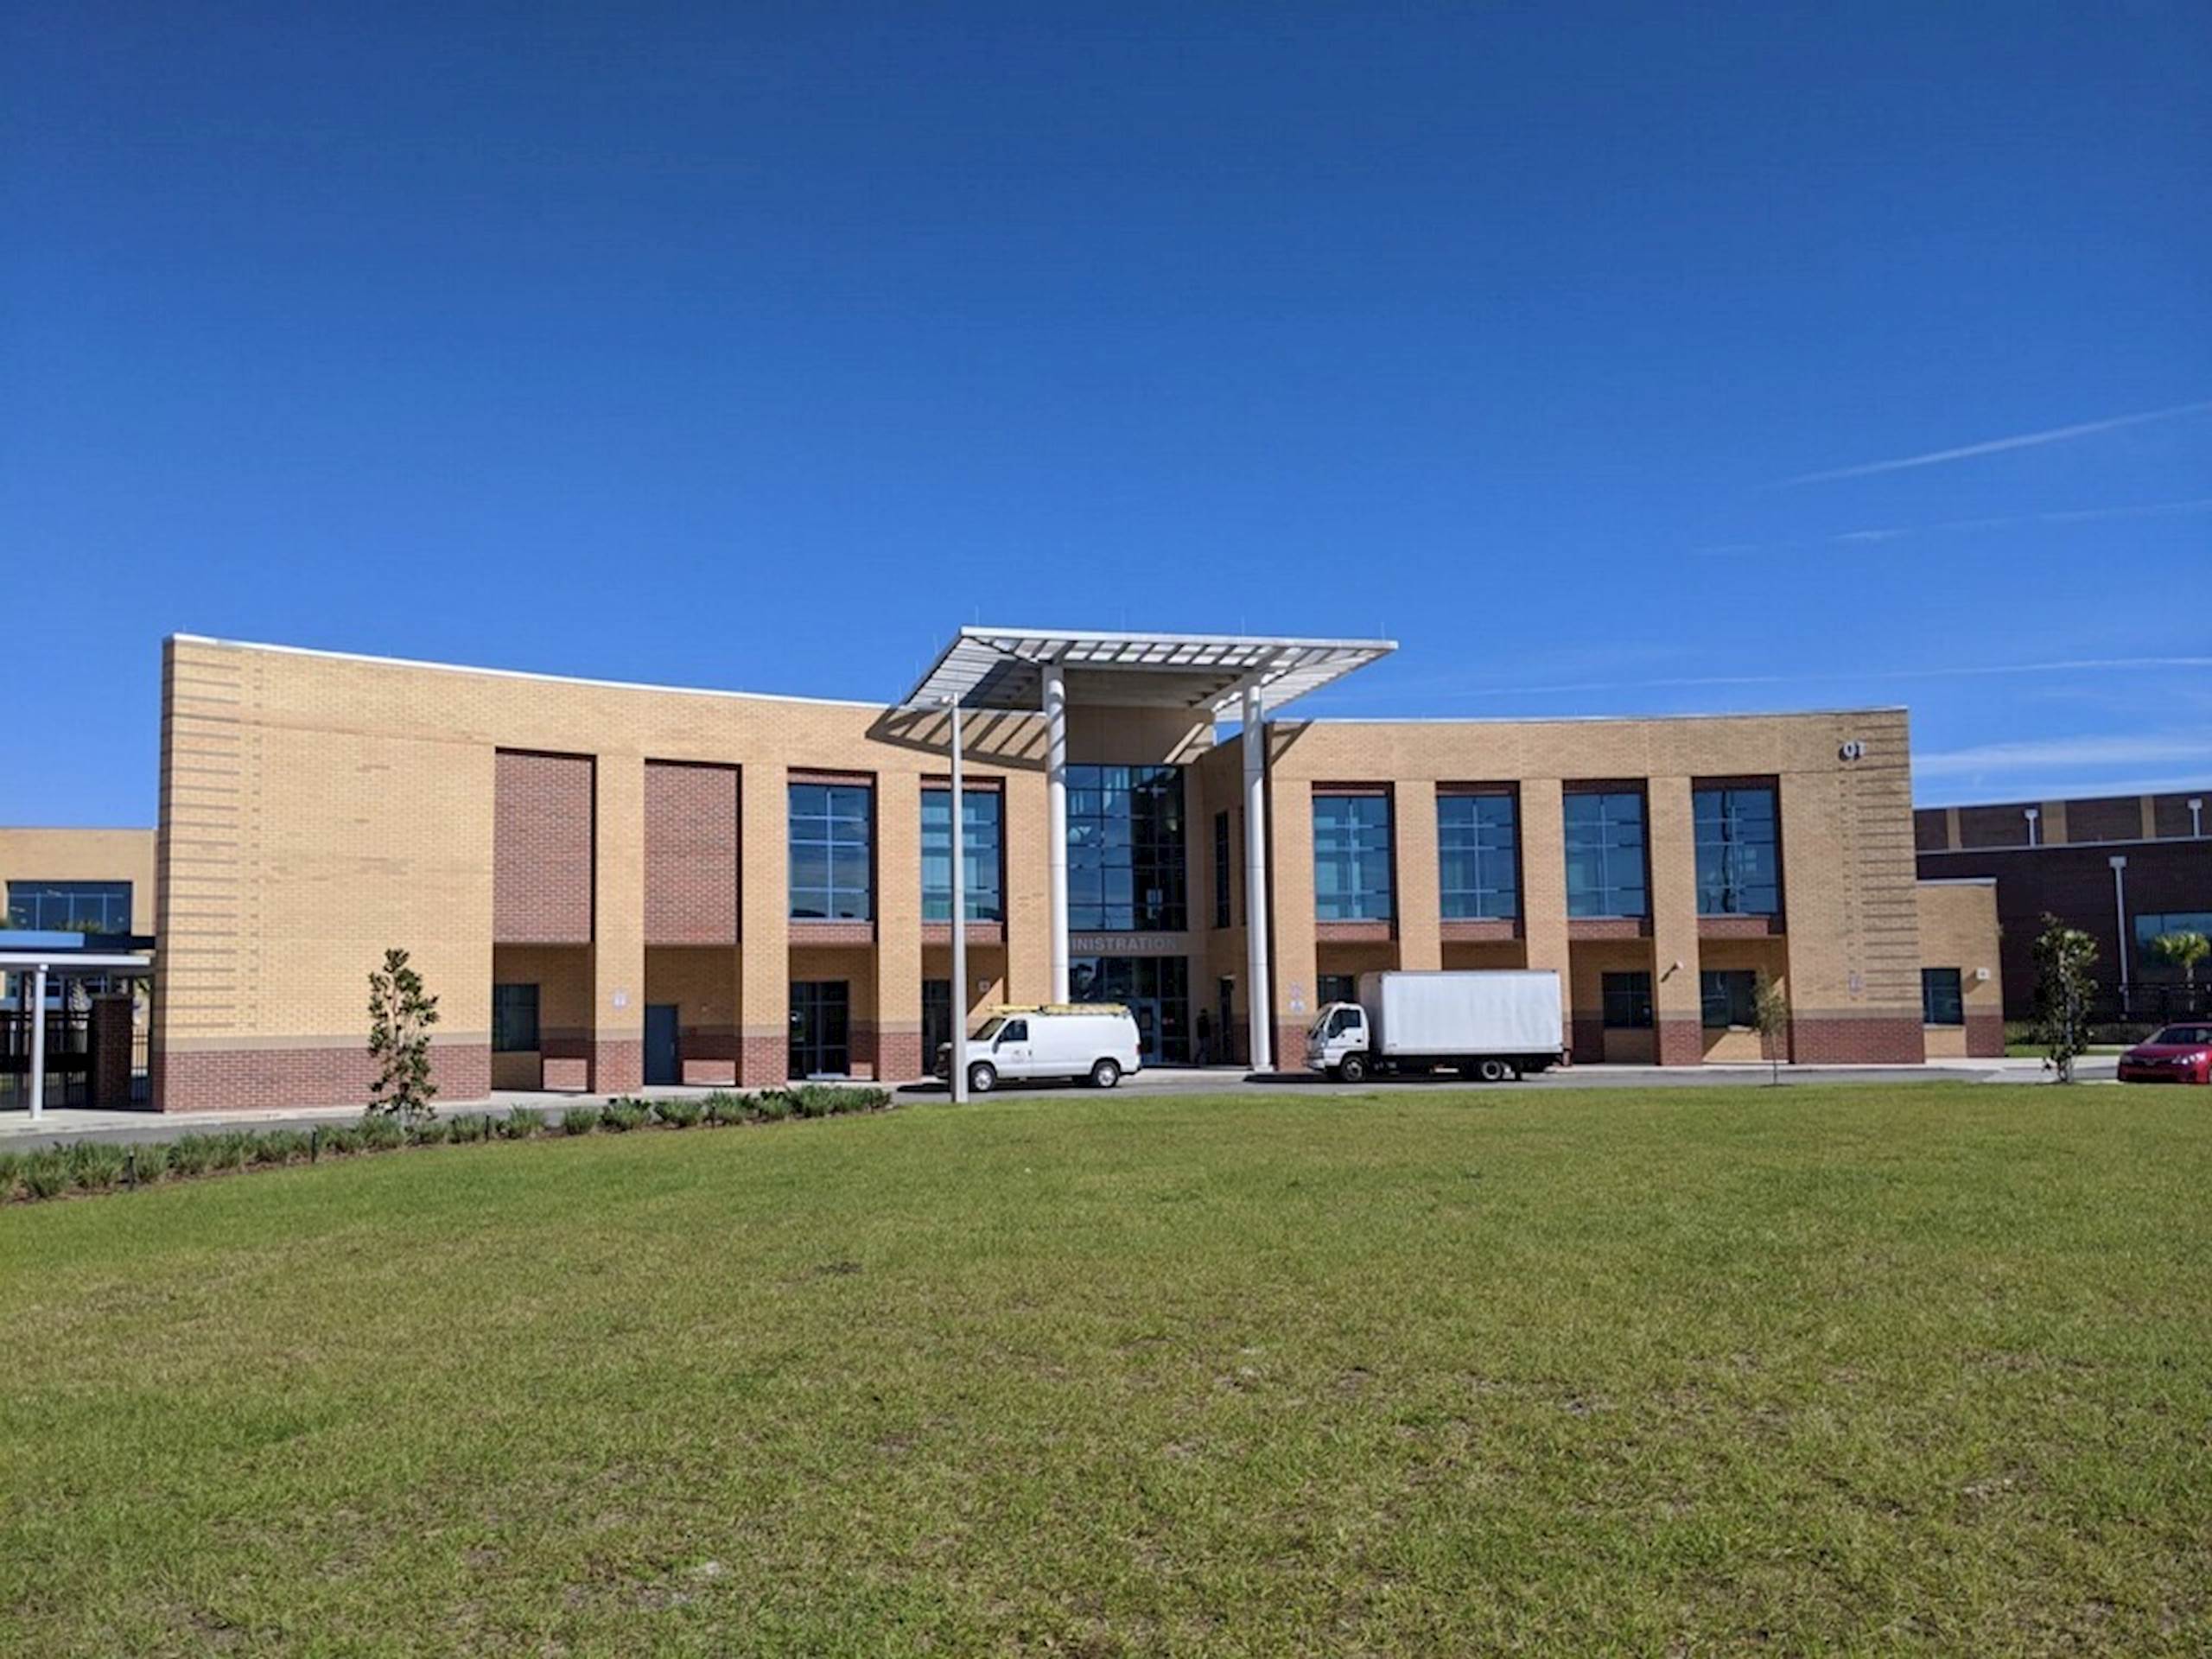 The Foundation for Seminole County Public Schools